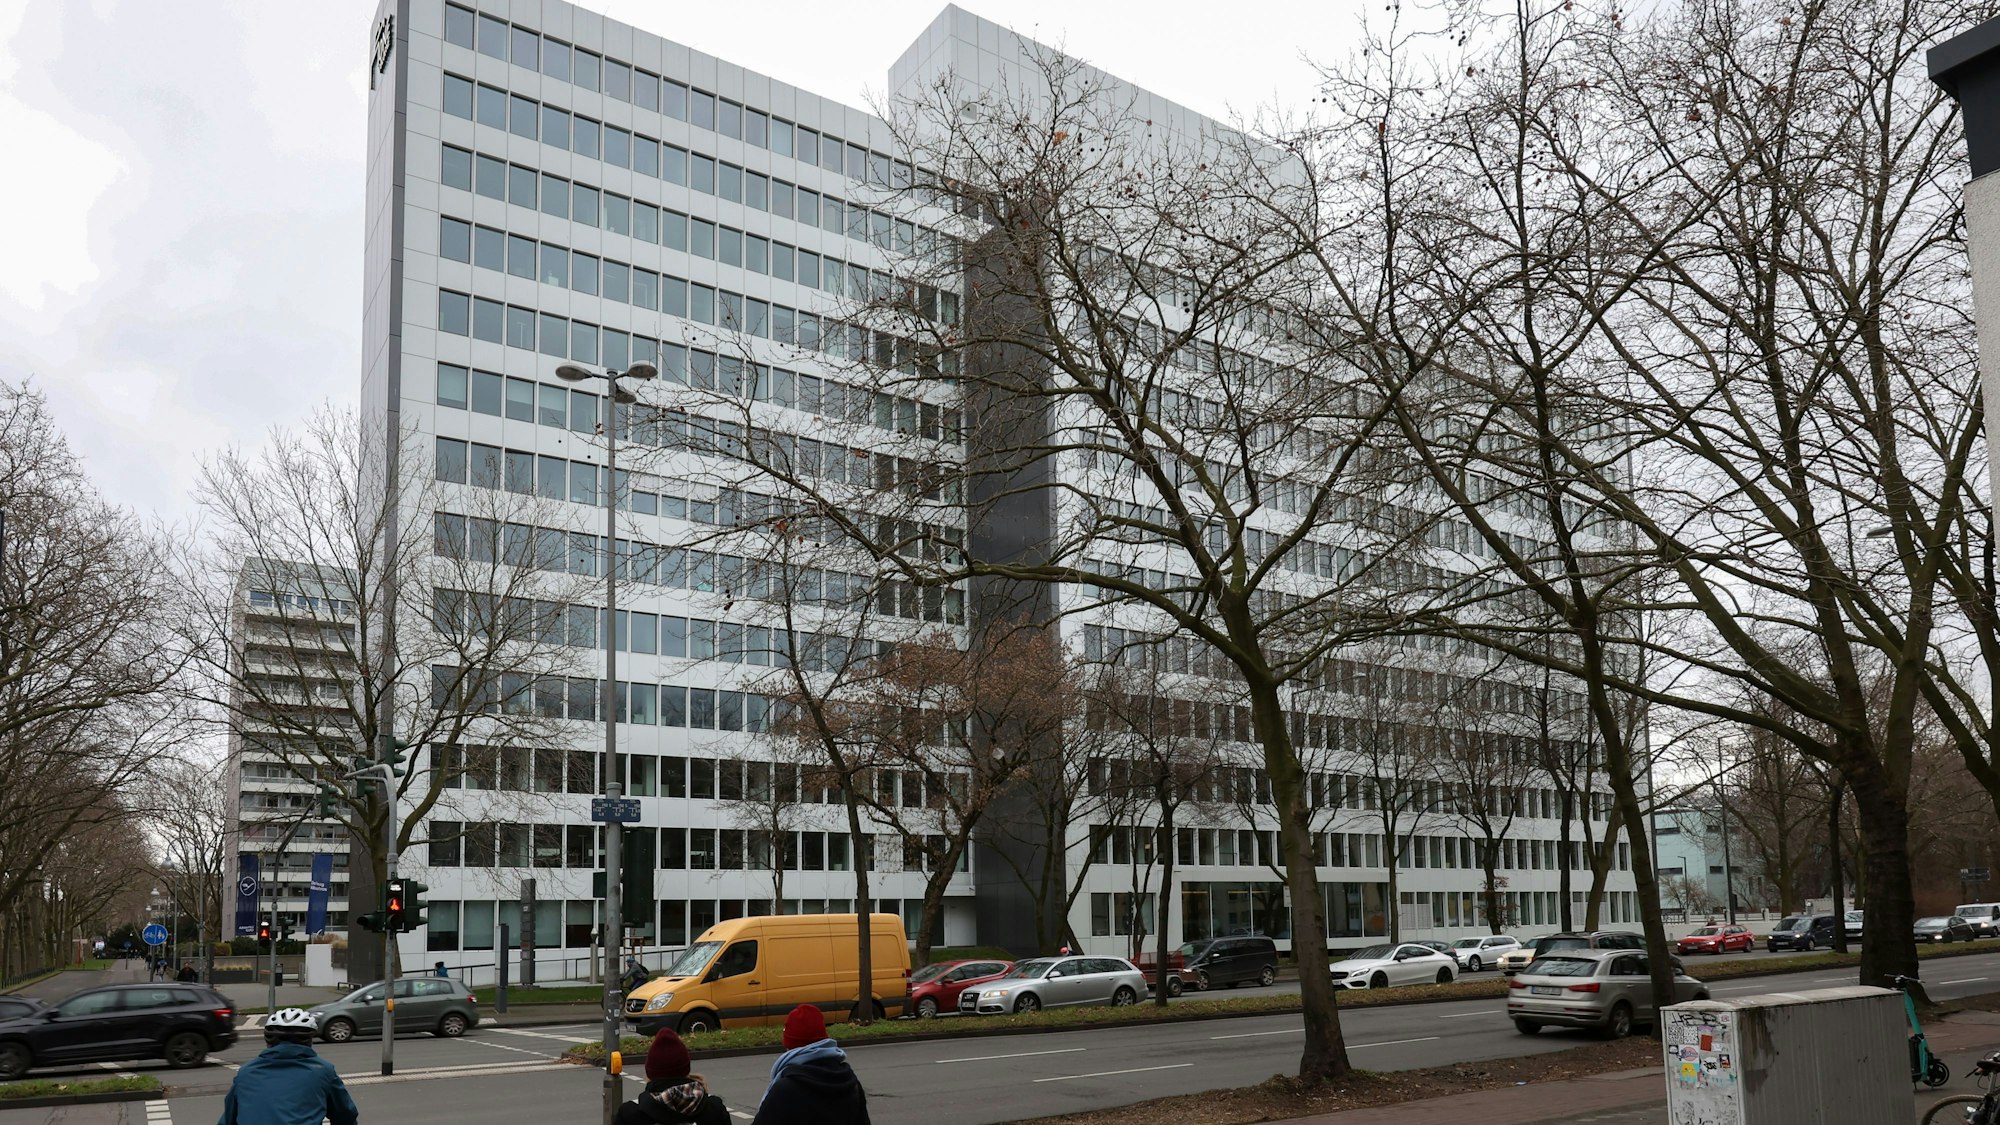 Die Deutsche Lufthansa Aktiengesellschaft hat ihren Firmensitz in Köln – und denkt über einen Umzug nach.
